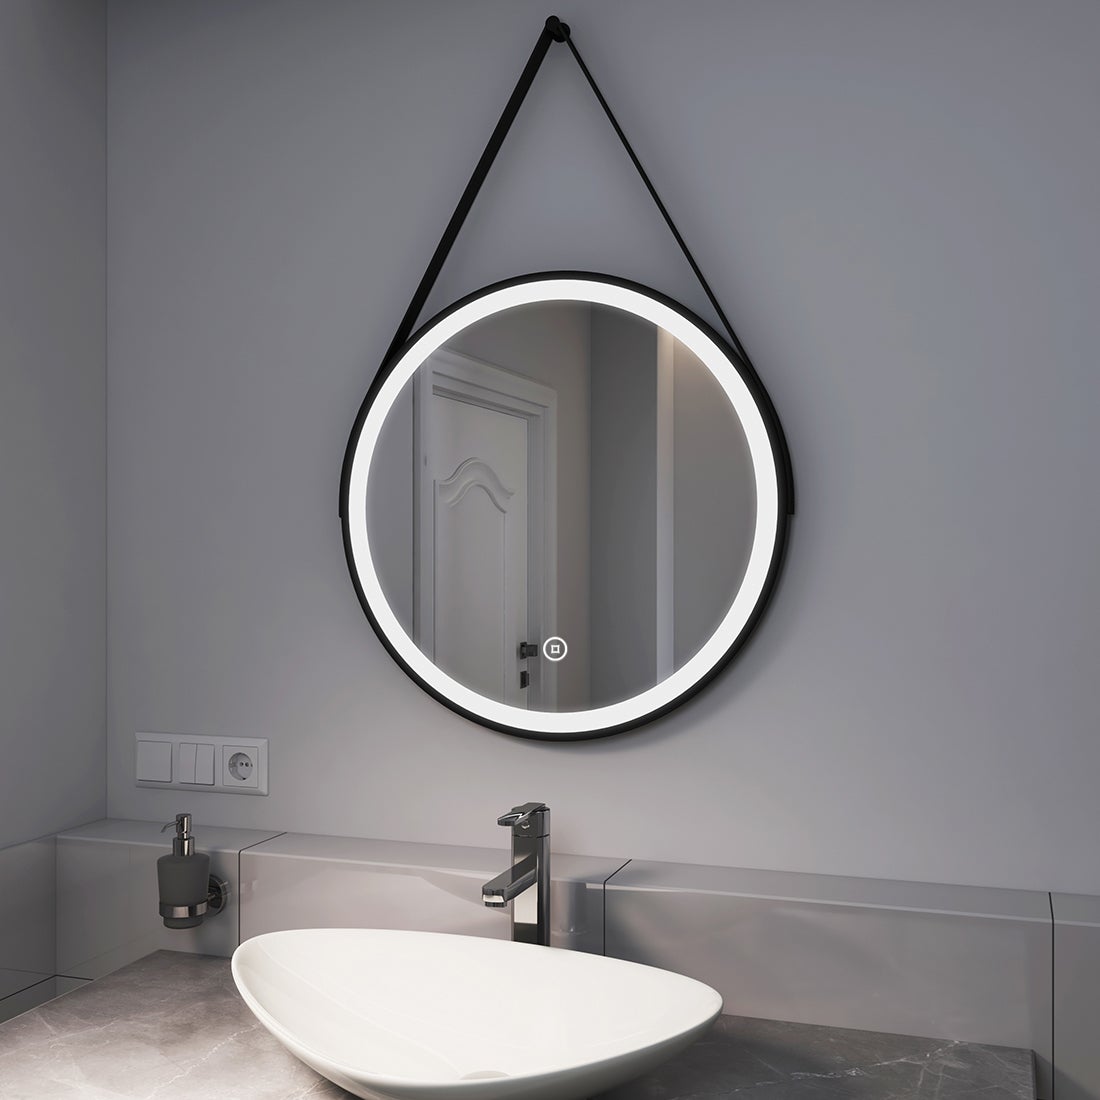 EMKE Badspiegel mit Beleuchtung Schwarz Rahmen und Riemen ф60cm, Kaltweißes Licht,Dimmbar